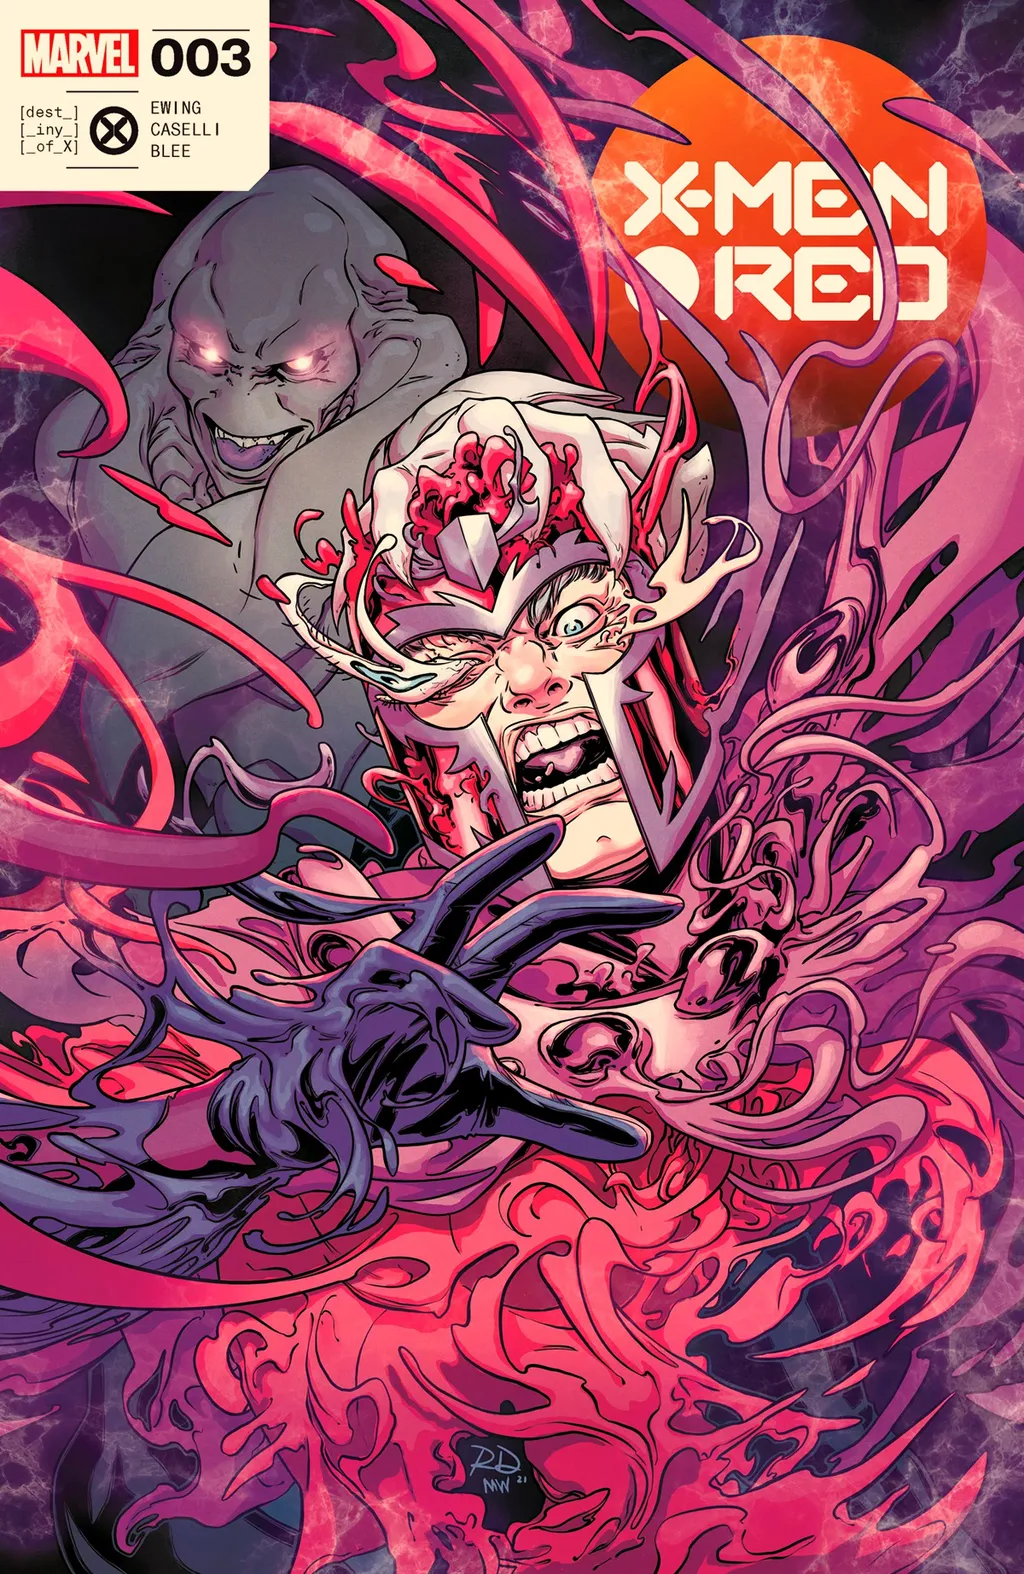 Capa de X-Men Red #3, que lembra quando Magneto arrancou o adamantium dos ossos de Wolverine (Imagem: Reprodução/Marvel Comics)